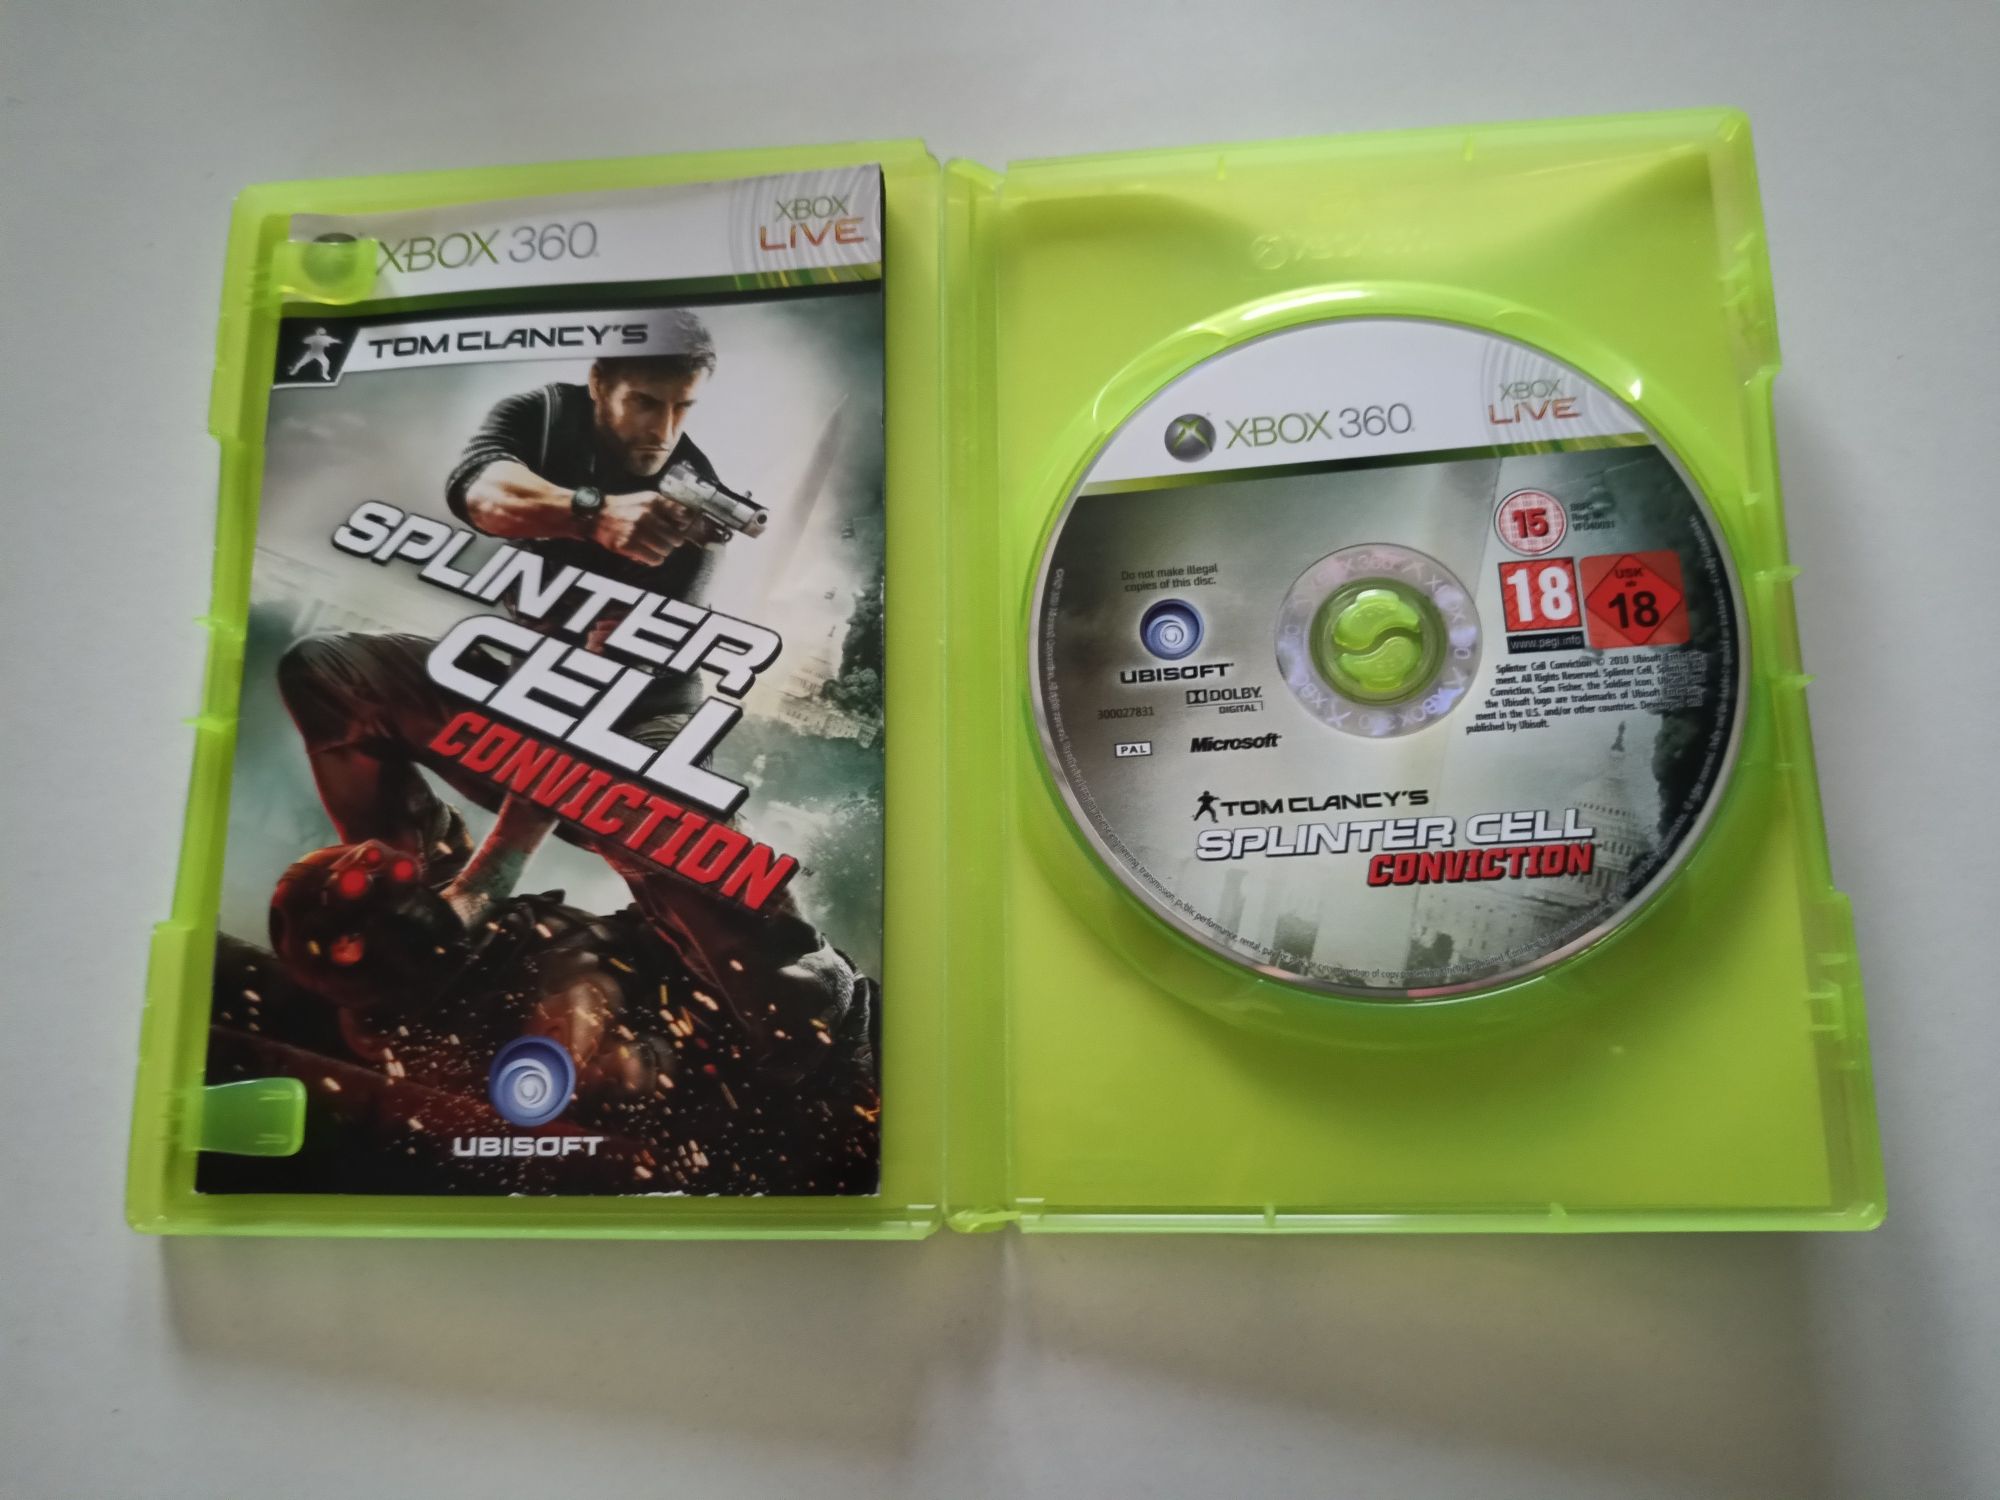 Gra Xbox 360 Tomy Clancy's Splinter Cell